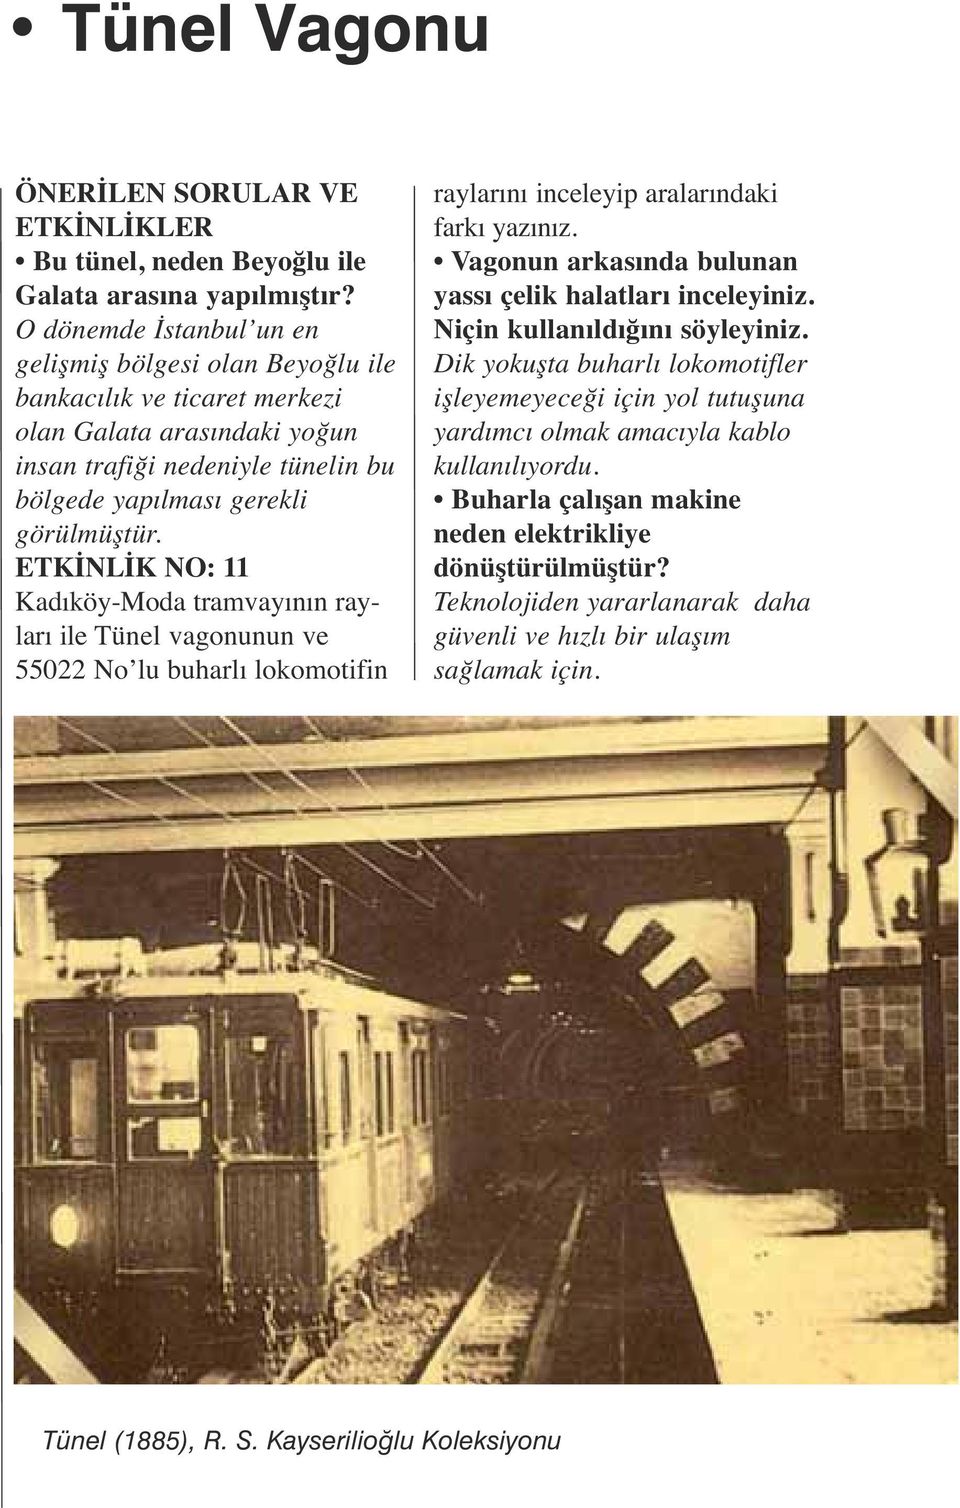 ETKİNLİK NO: 11 Kadıköy-Moda tramvayının rayları ile Tünel vagonunun ve 55022 No lu buharlı lokomotifin raylarını inceleyip aralarındaki farkı yazınız.